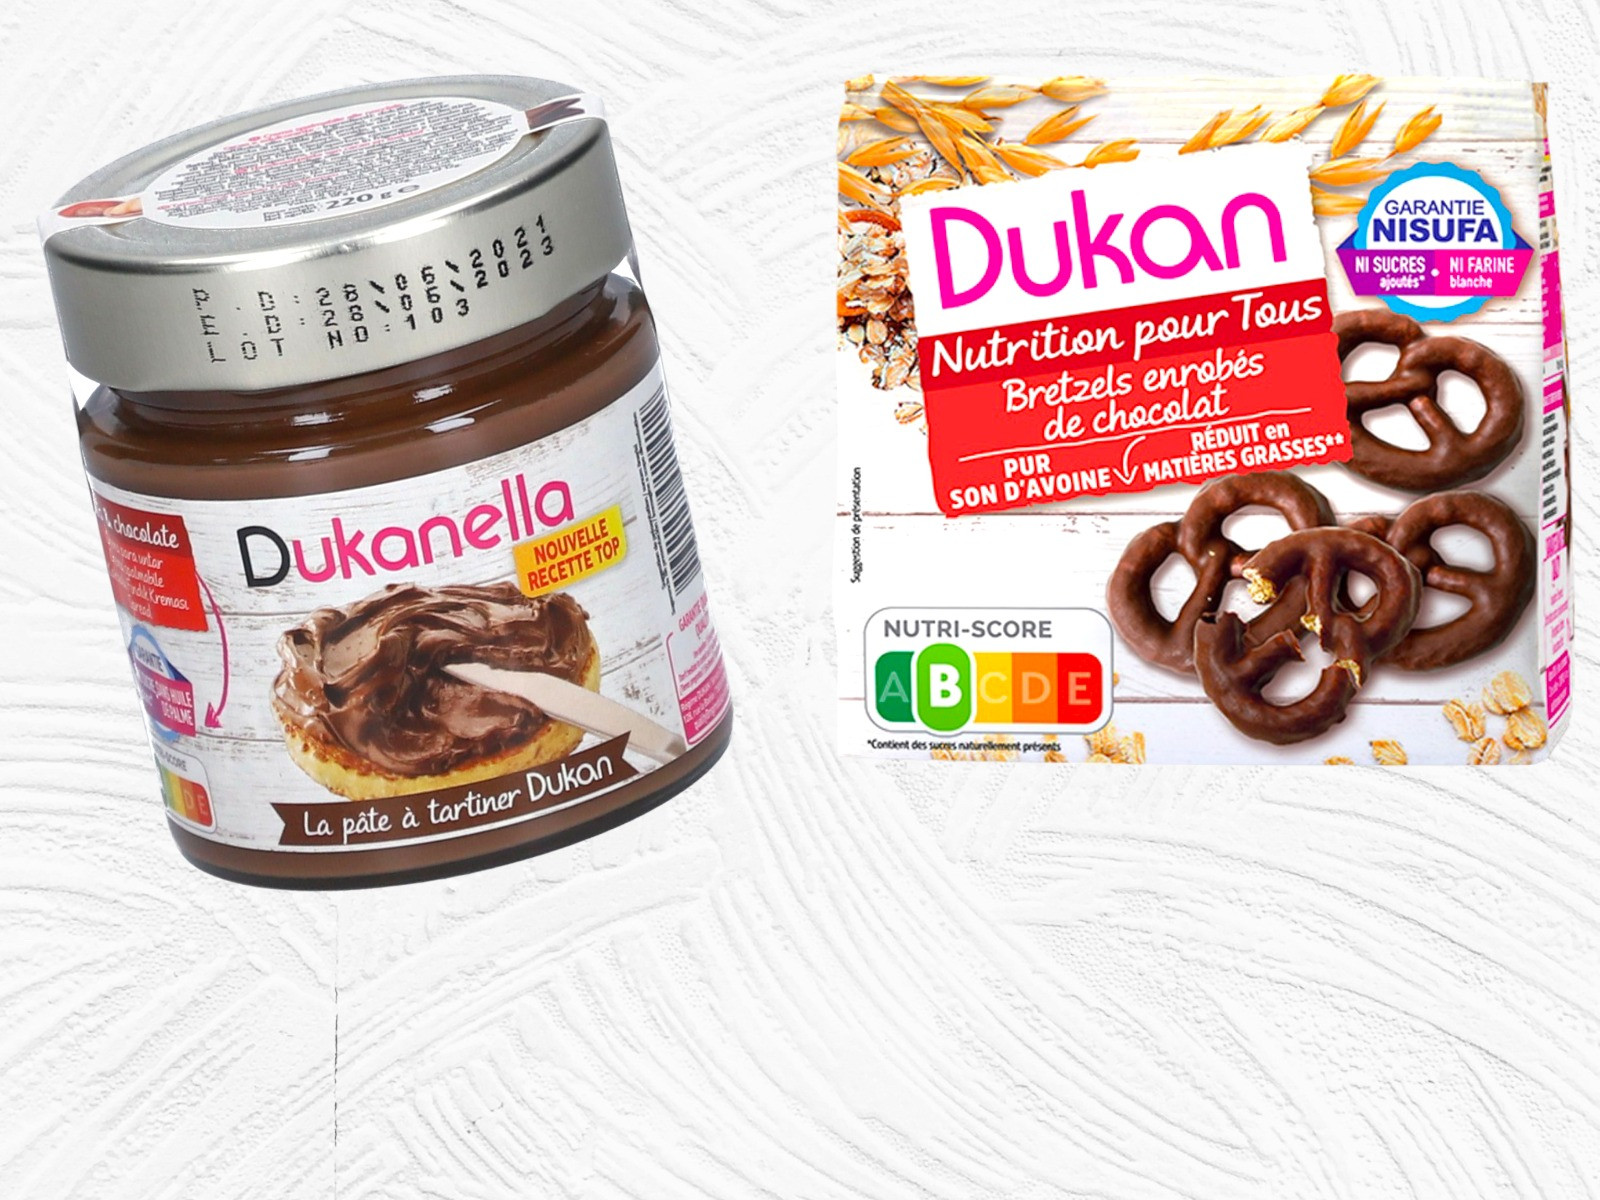 Pretzels and crackers Dukan diet